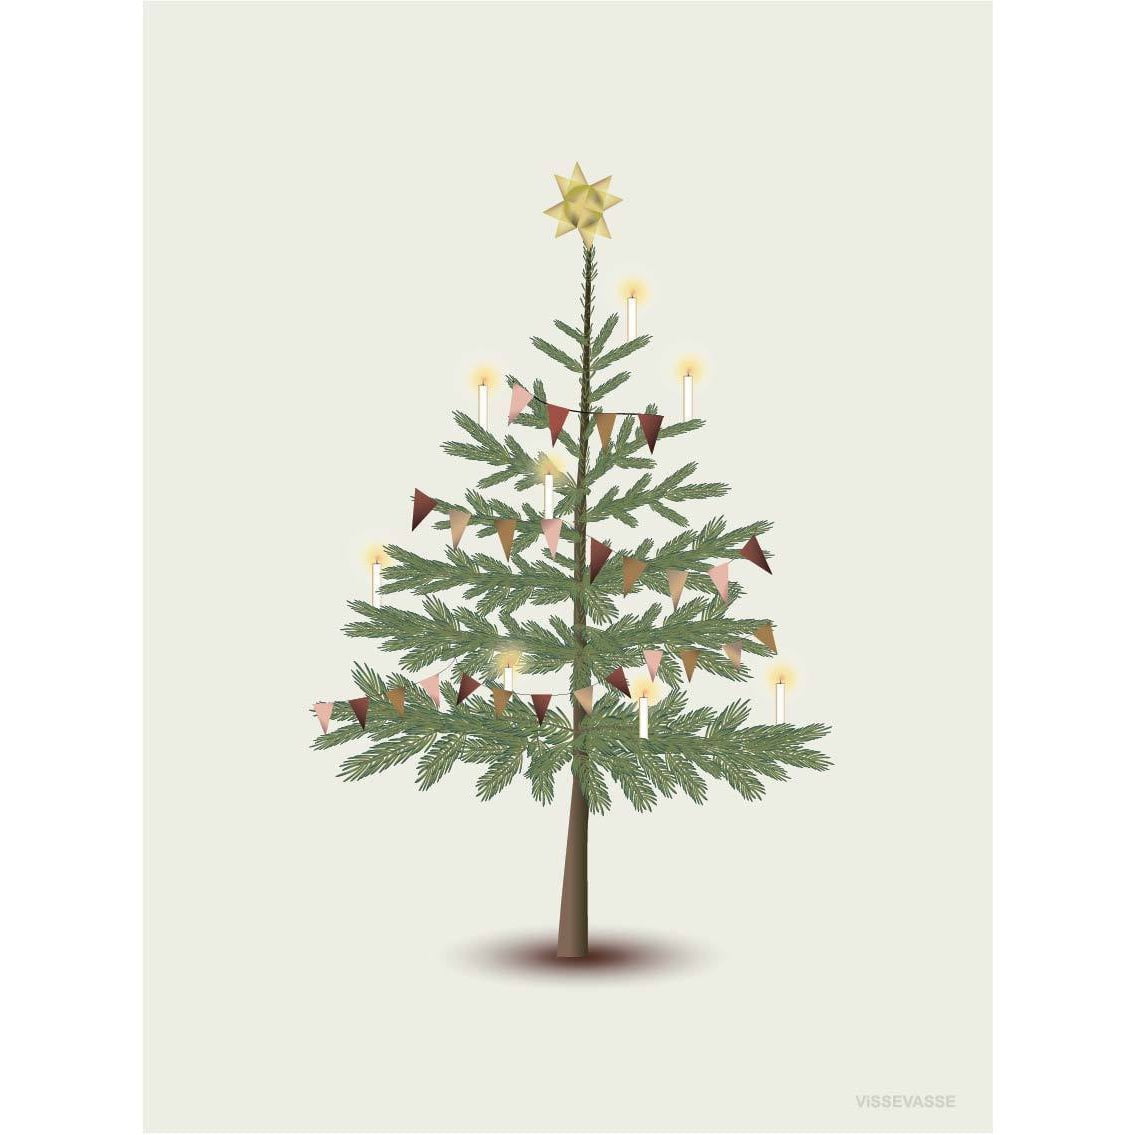 Vissevasse La carte de voeux de l'arbre de Noël, 10,5x15cm